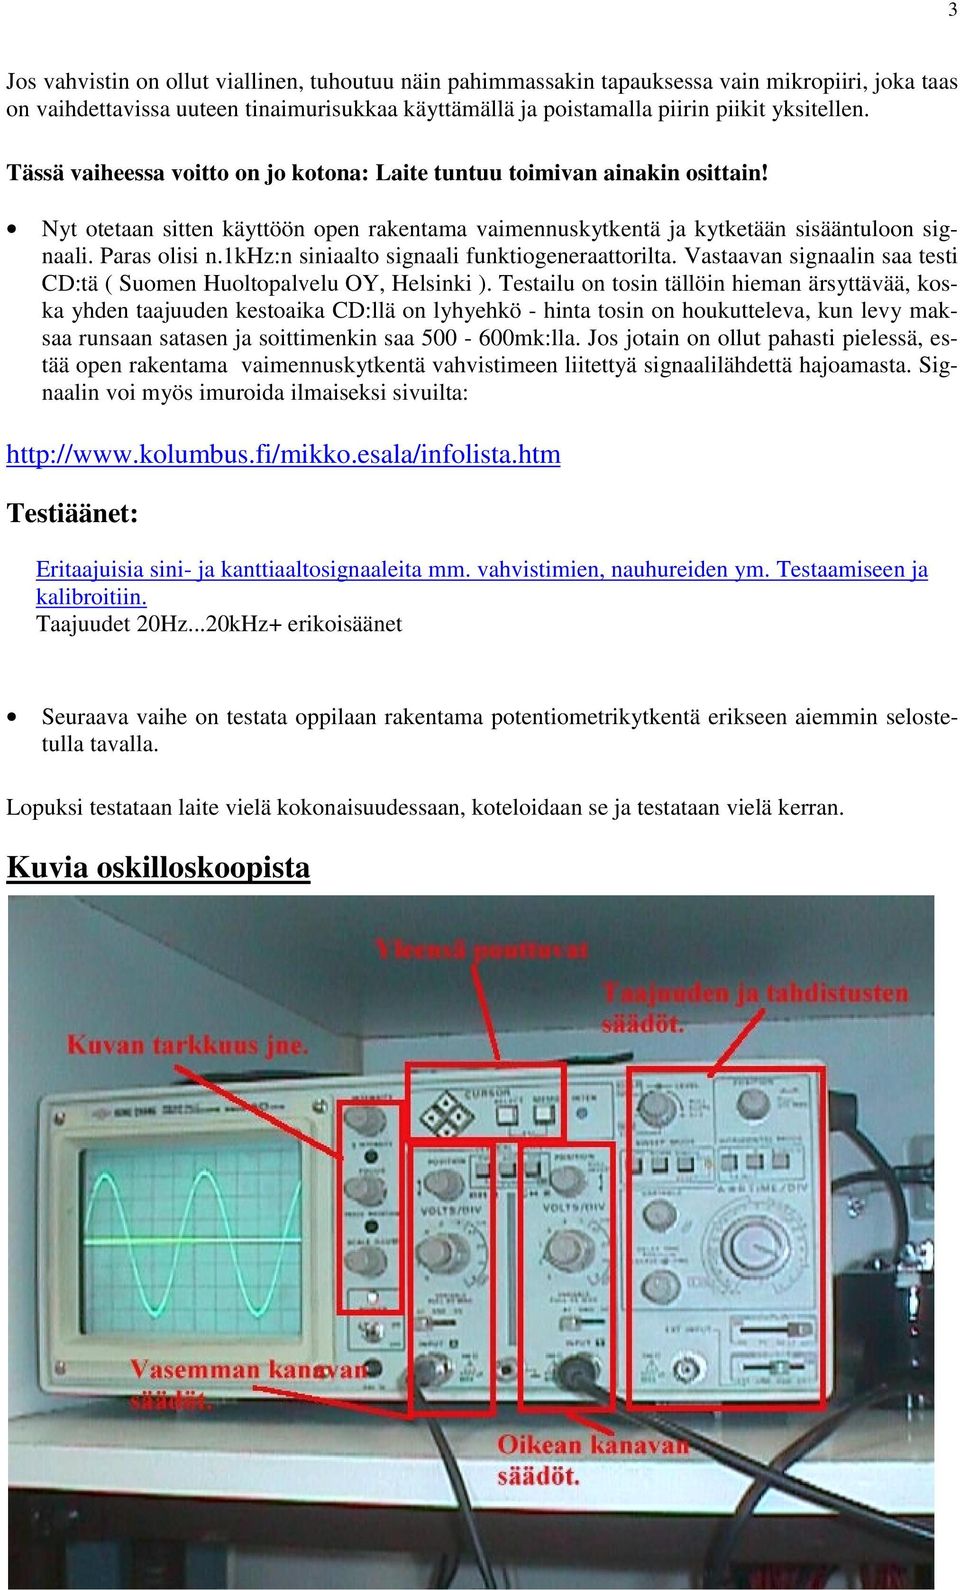 1khz:n siniaalto signaali funktiogeneraattorilta. Vastaavan signaalin saa testi CD:tä ( Suomen Huoltopalvelu OY, Helsinki ).